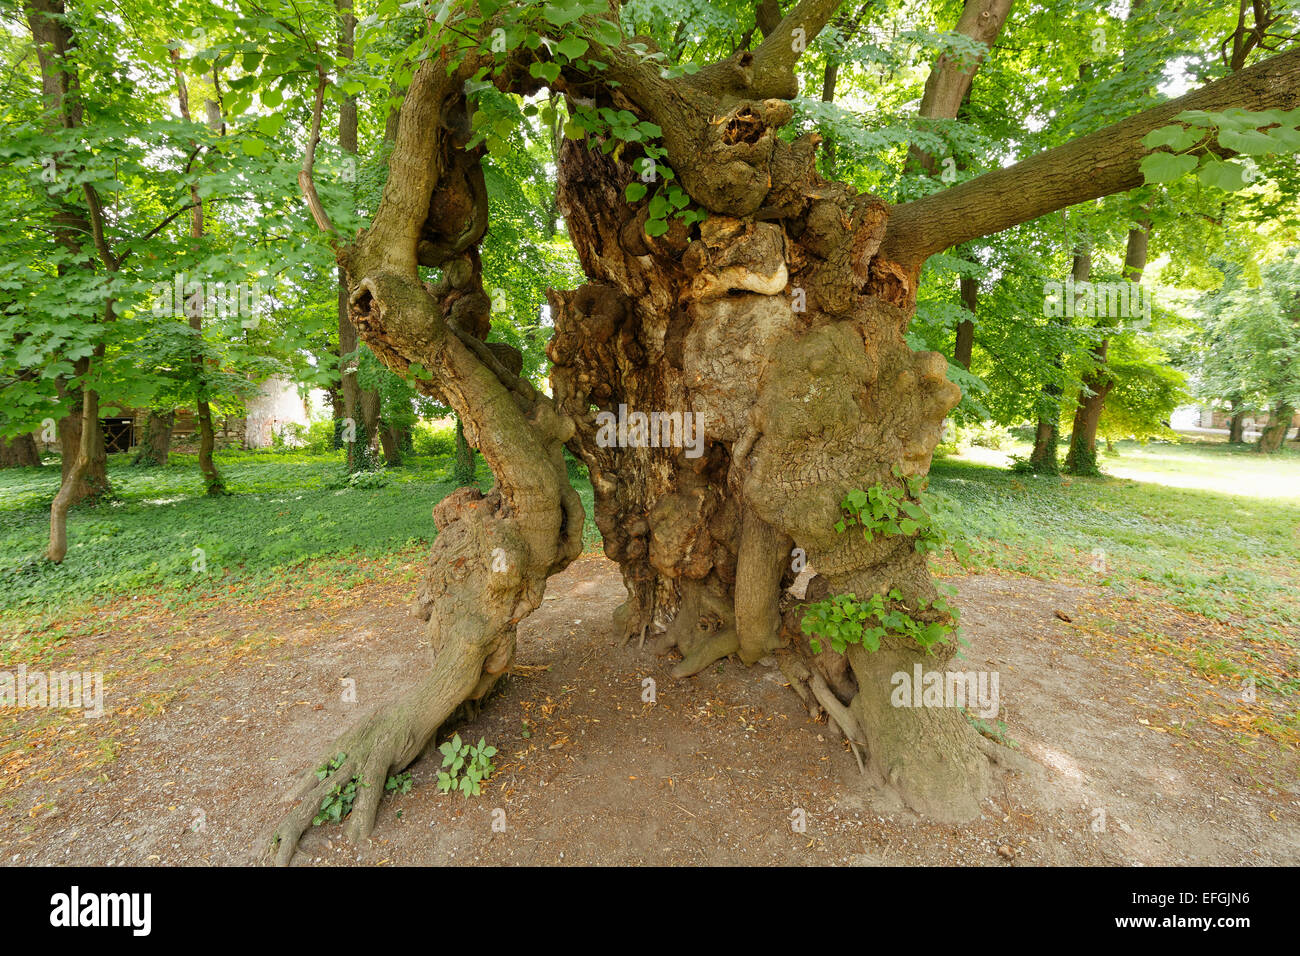 Vieux chêne, un monument naturel dans le parc du château, Pottendorf, Industrieviertel, Basse Autriche, Autriche Banque D'Images